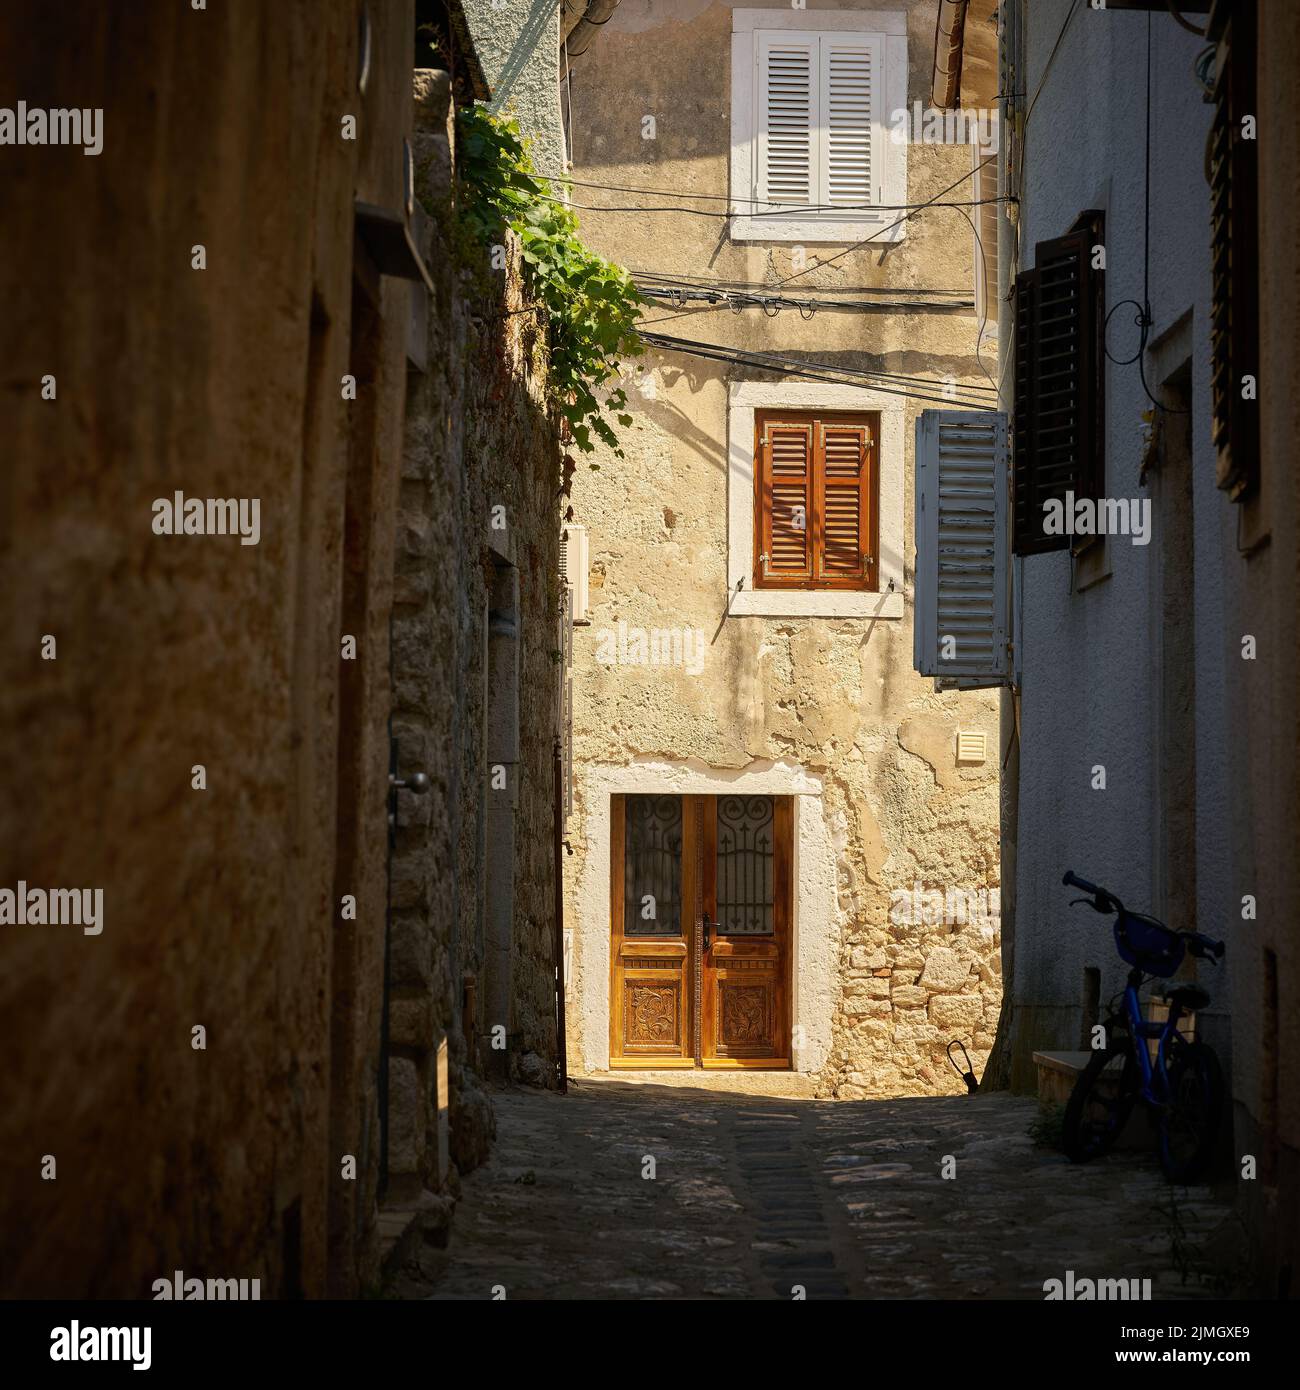 Historique pour la région Maison typique dans une ruelle dans la vieille ville de Krk en Croatie Banque D'Images